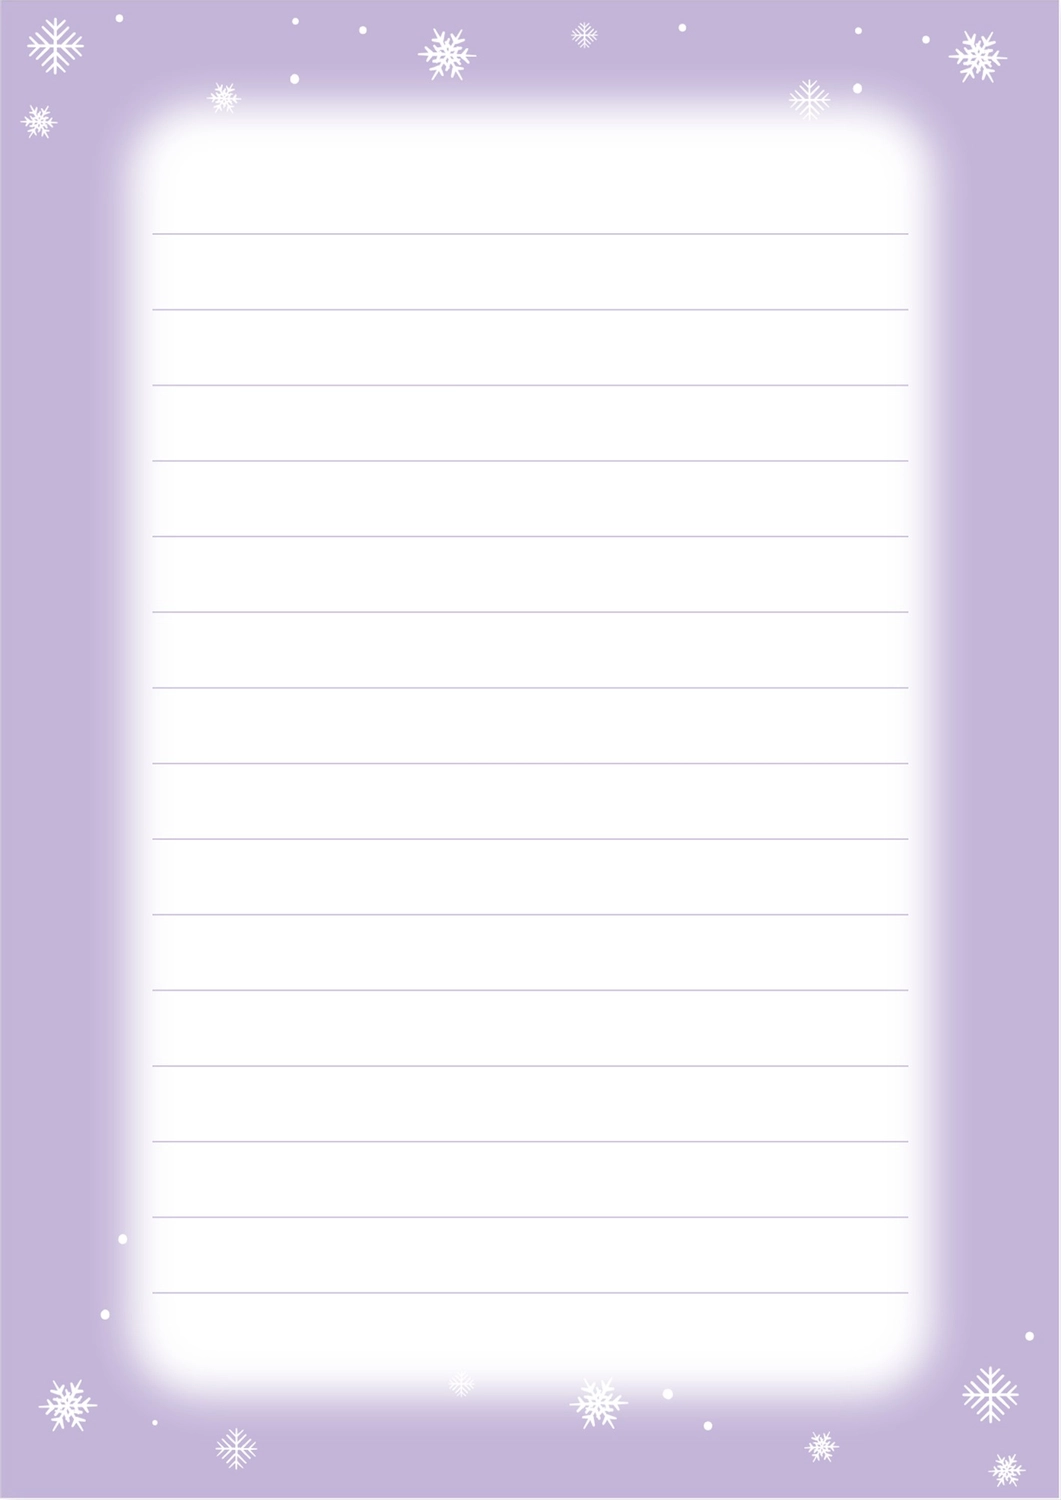 便箋 雪の結晶薄紫色フレーム の無料便箋テンプレート デザインac